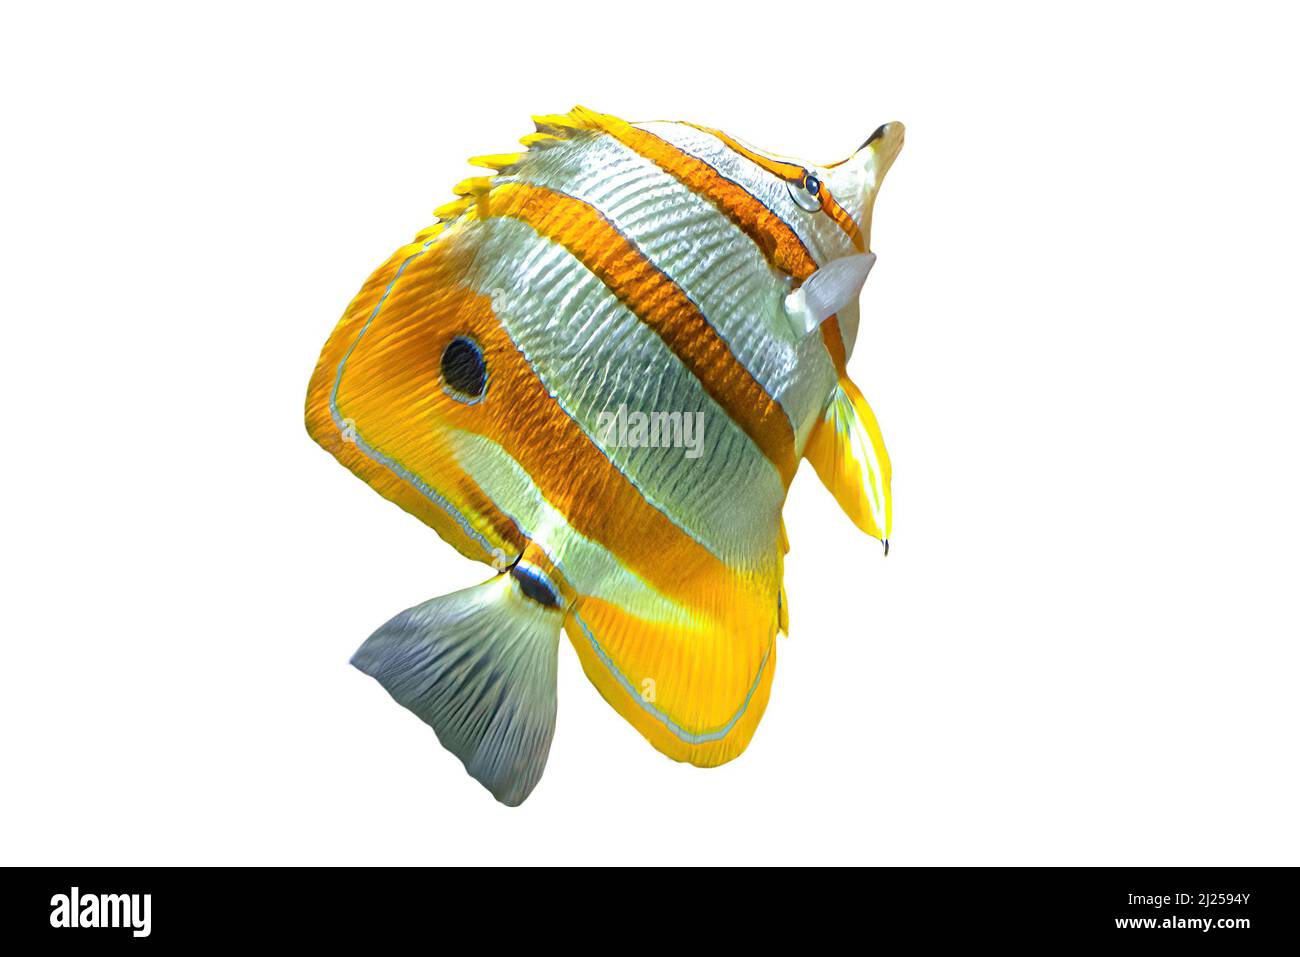 Le butterflyfish Copperband ou le poisson de corail à bec isolé sur blanc. Chelmon rostratus espèce de butterflyfish appartenant à la famille des Chaetodontidae. Vie Banque D'Images